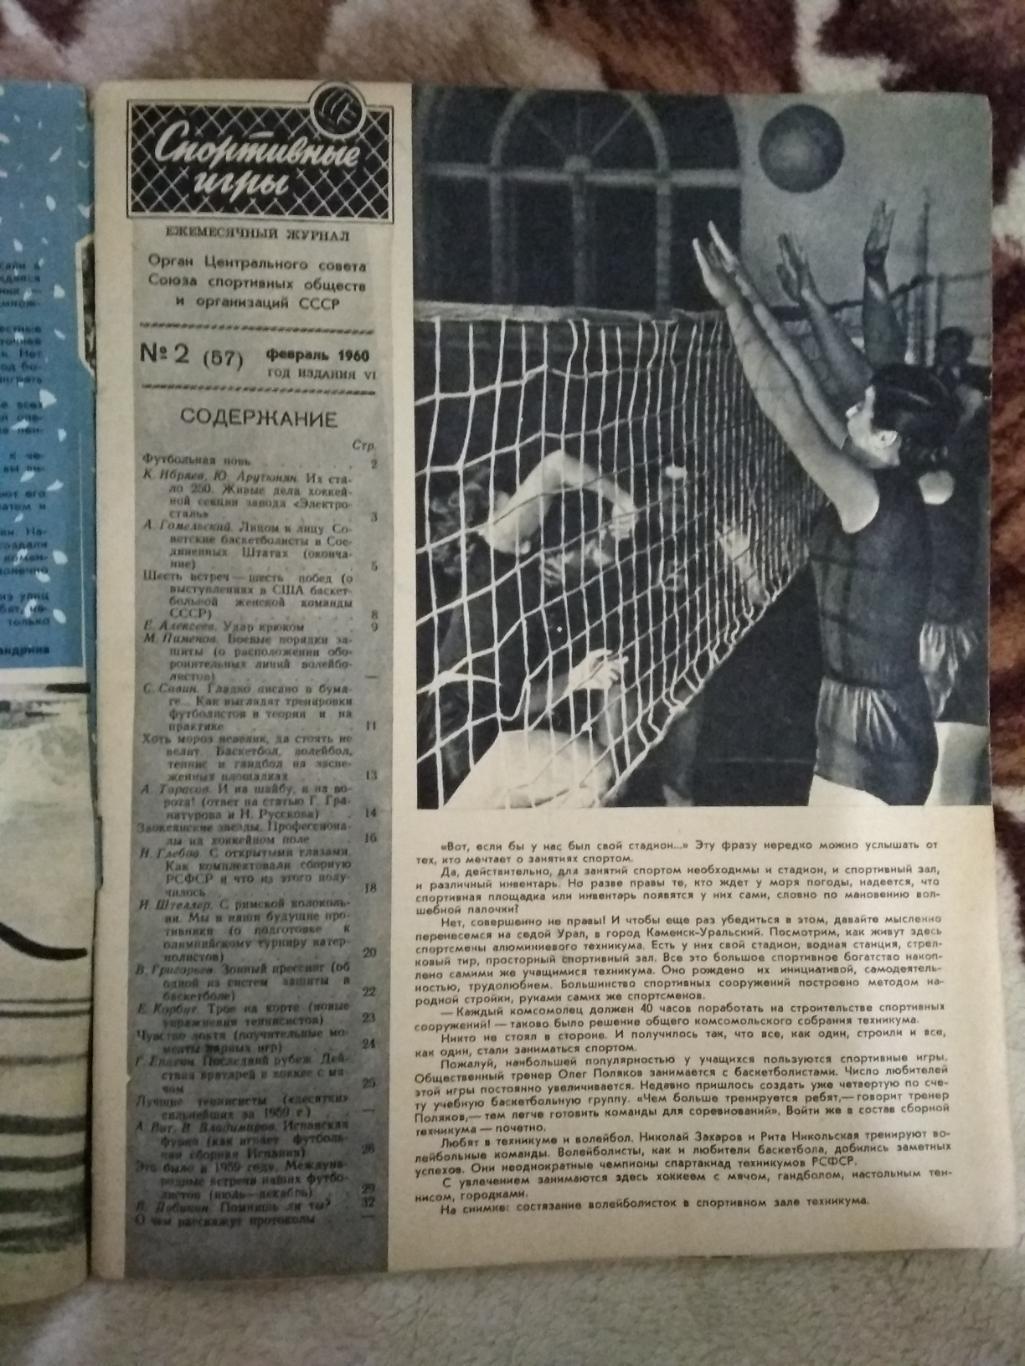 Журнал. Спортивные игры № 2 1960 г. 1